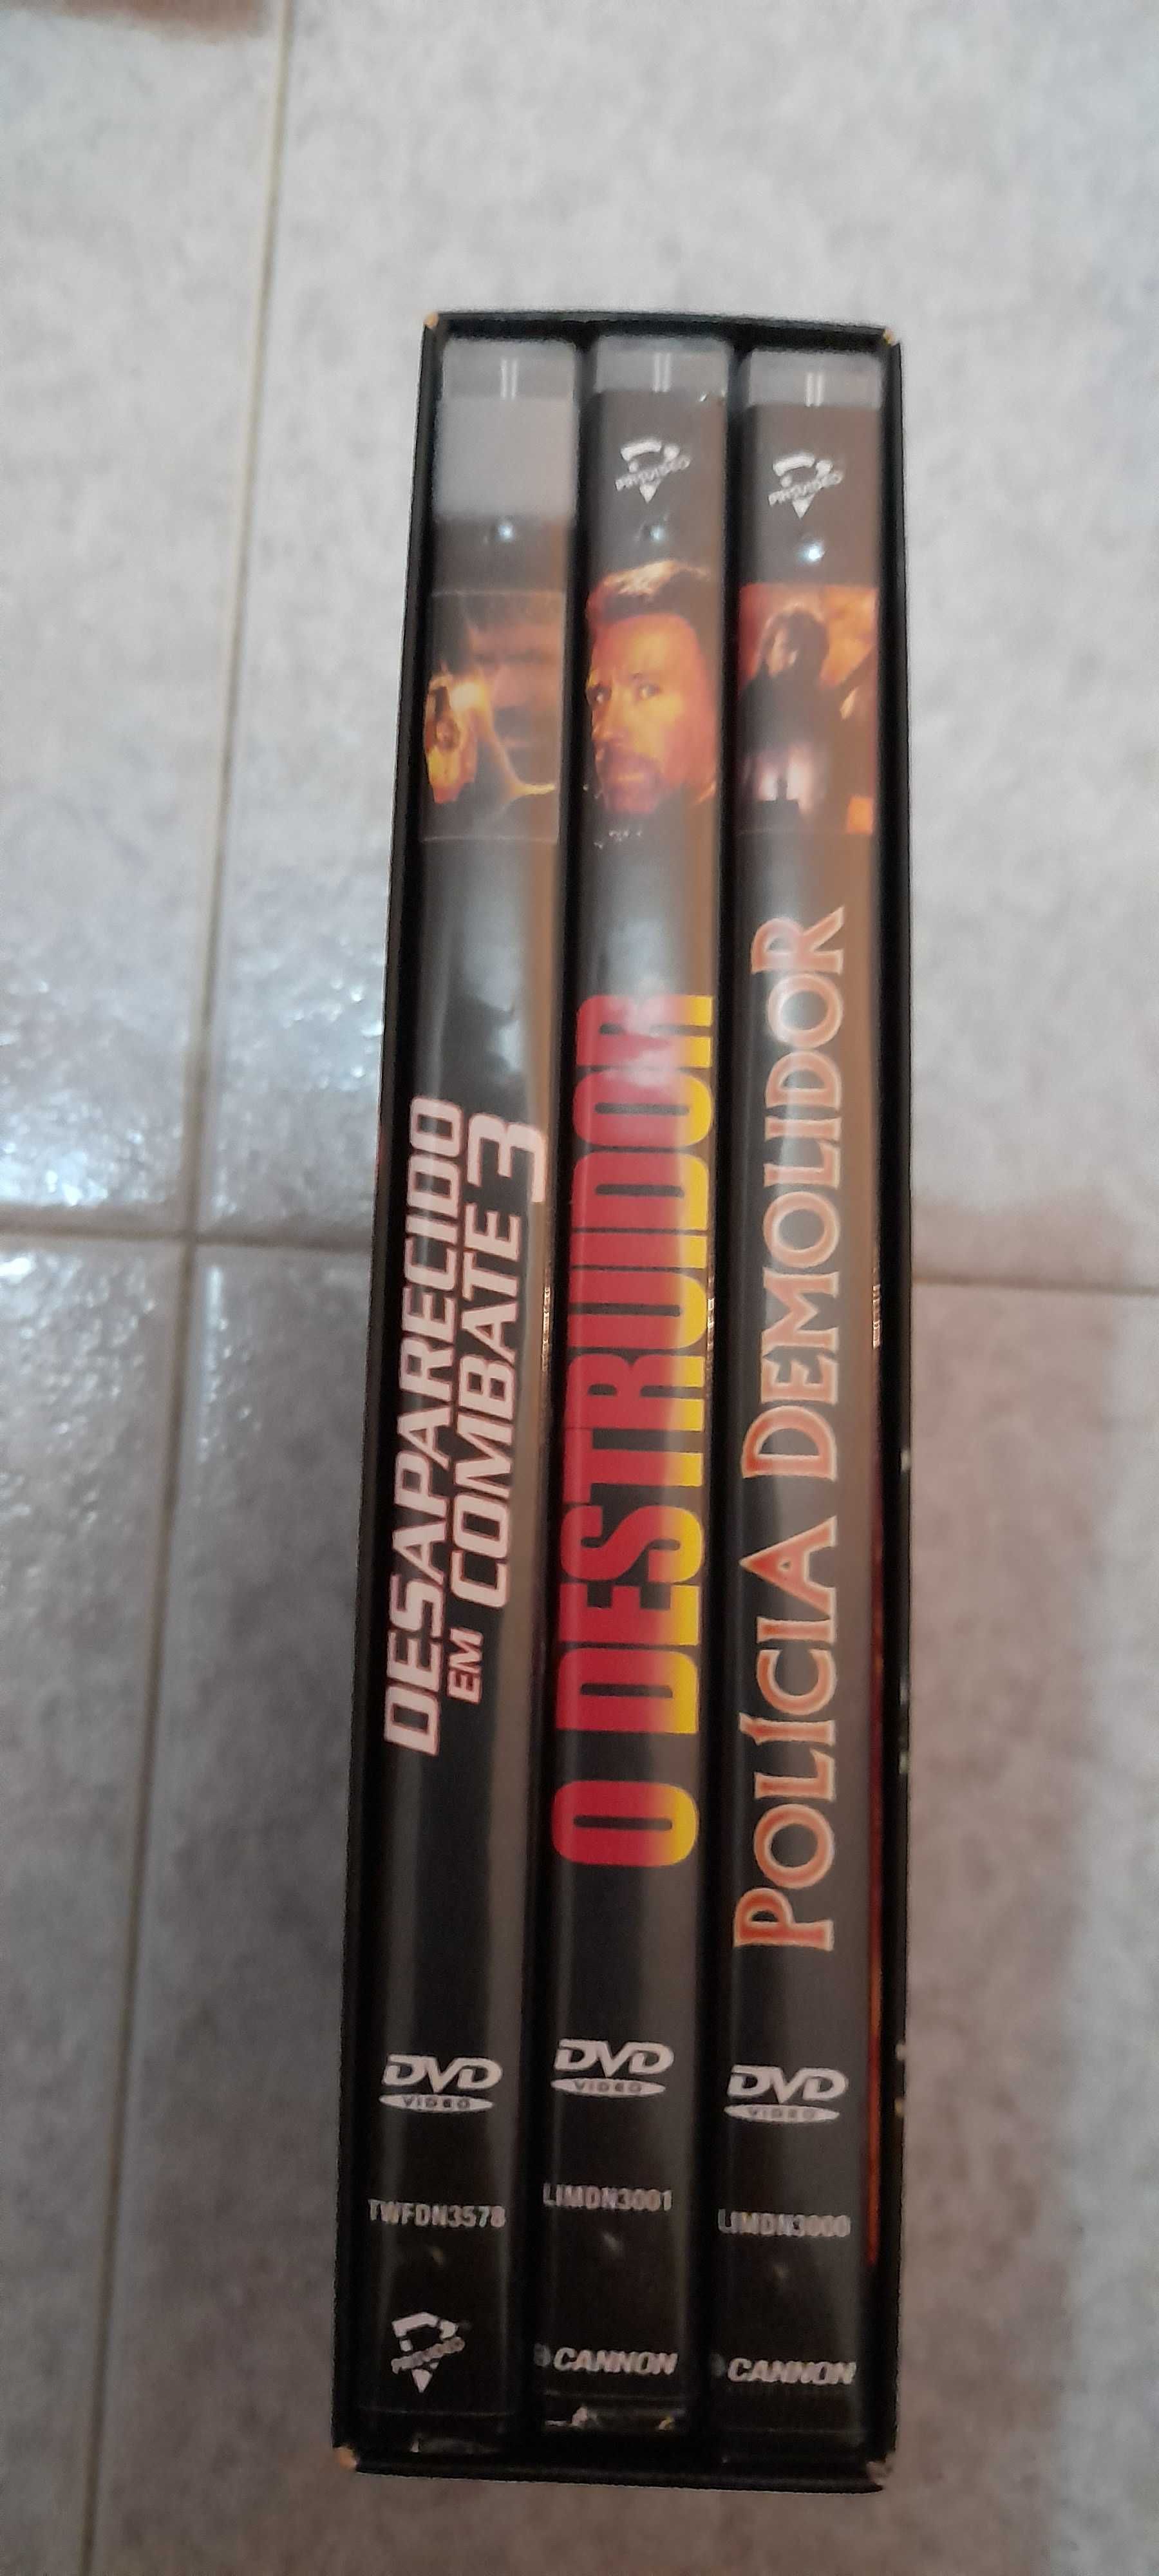 Vendo 3 filmes do Chuck norris em dvd